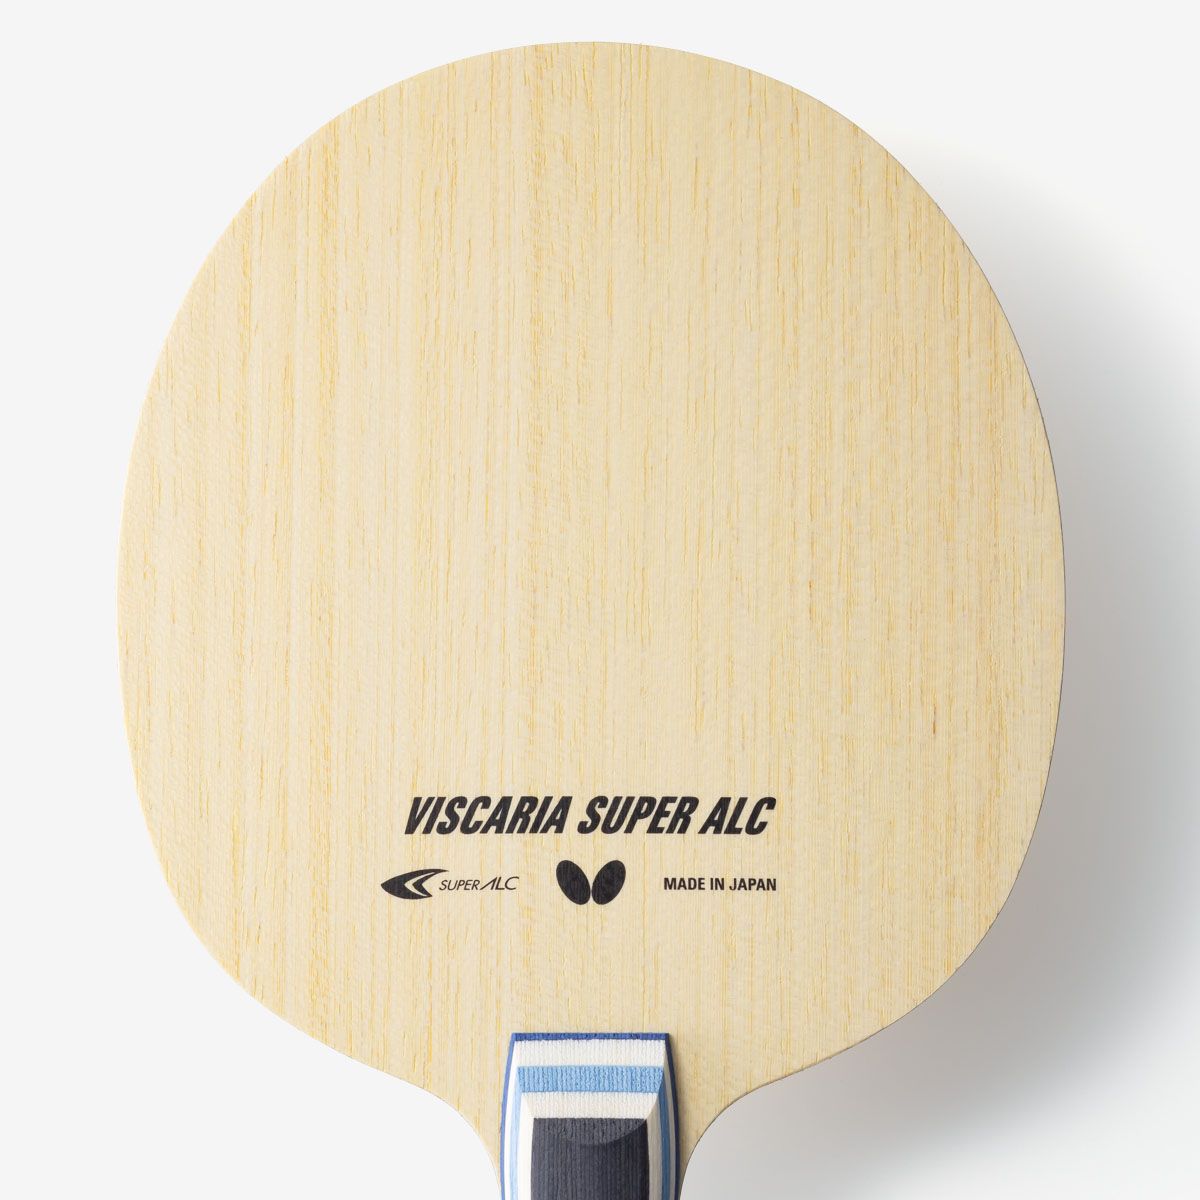 卓球ラケット ビスカリアSUPER ALC 反転式 ペンホルダー グリップ加工品-